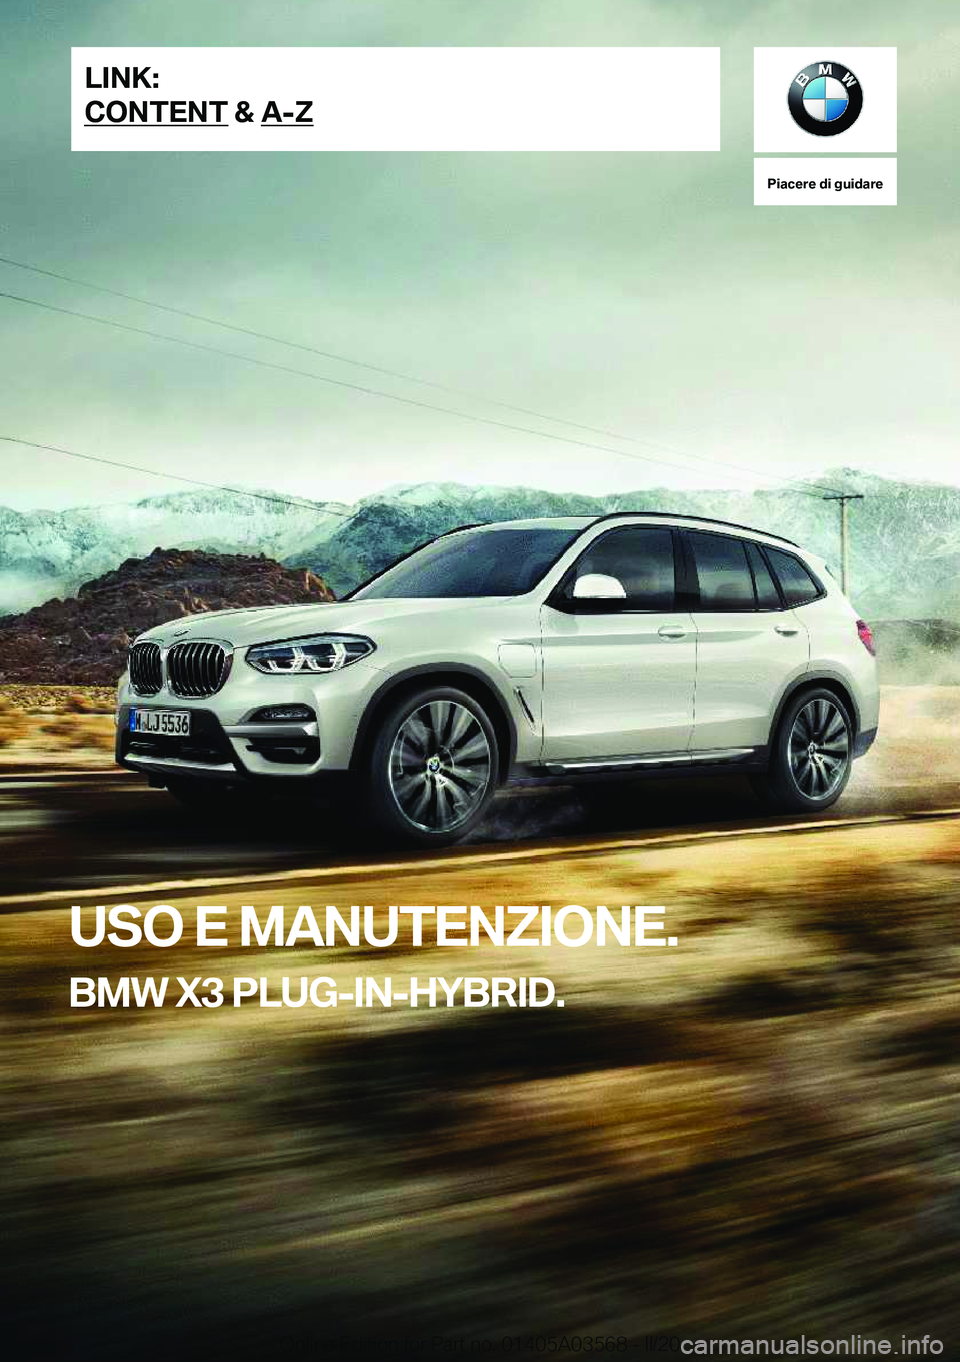 BMW X3 PLUG IN HYBRID 2020  Libretti Di Uso E manutenzione (in Italian) �P�i�a�c�e�r�e��d�i��g�u�i�d�a�r�e
�U�S�O��E��M�A�N�U�T�E�N�Z�I�O�N�E�.
�B�M�W��X�3��P�L�U�G�-�I�N�-�H�Y�B�R�I�D�.�L�I�N�K�:
�C�O�N�T�E�N�T��&��A�-�Z�O�n�l�i�n�e��E�d�i�t�i�o�n��f�o�r��P�a�